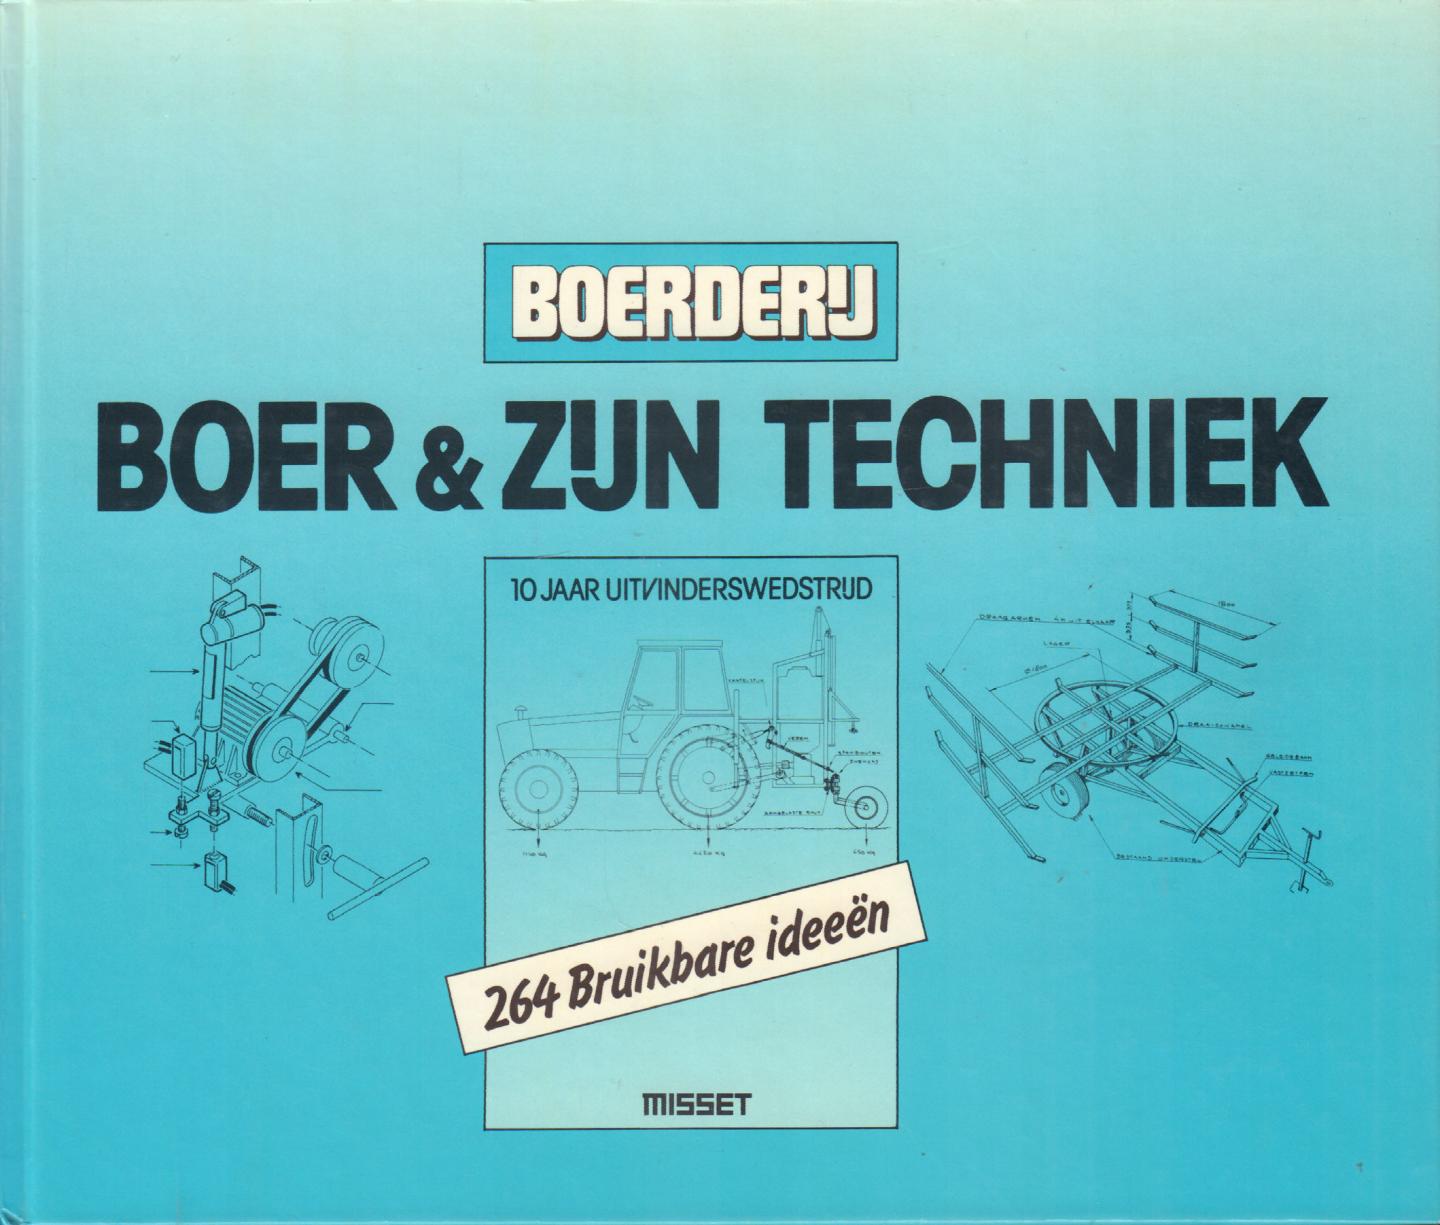 Redactie Boerderij (samenstelling en redactie) - Boer & Zijn Techniek (10 Jaar Uitvinderswedstrijd, 264 bruikbare ideeën), 245 pag. hardcover, gave staat